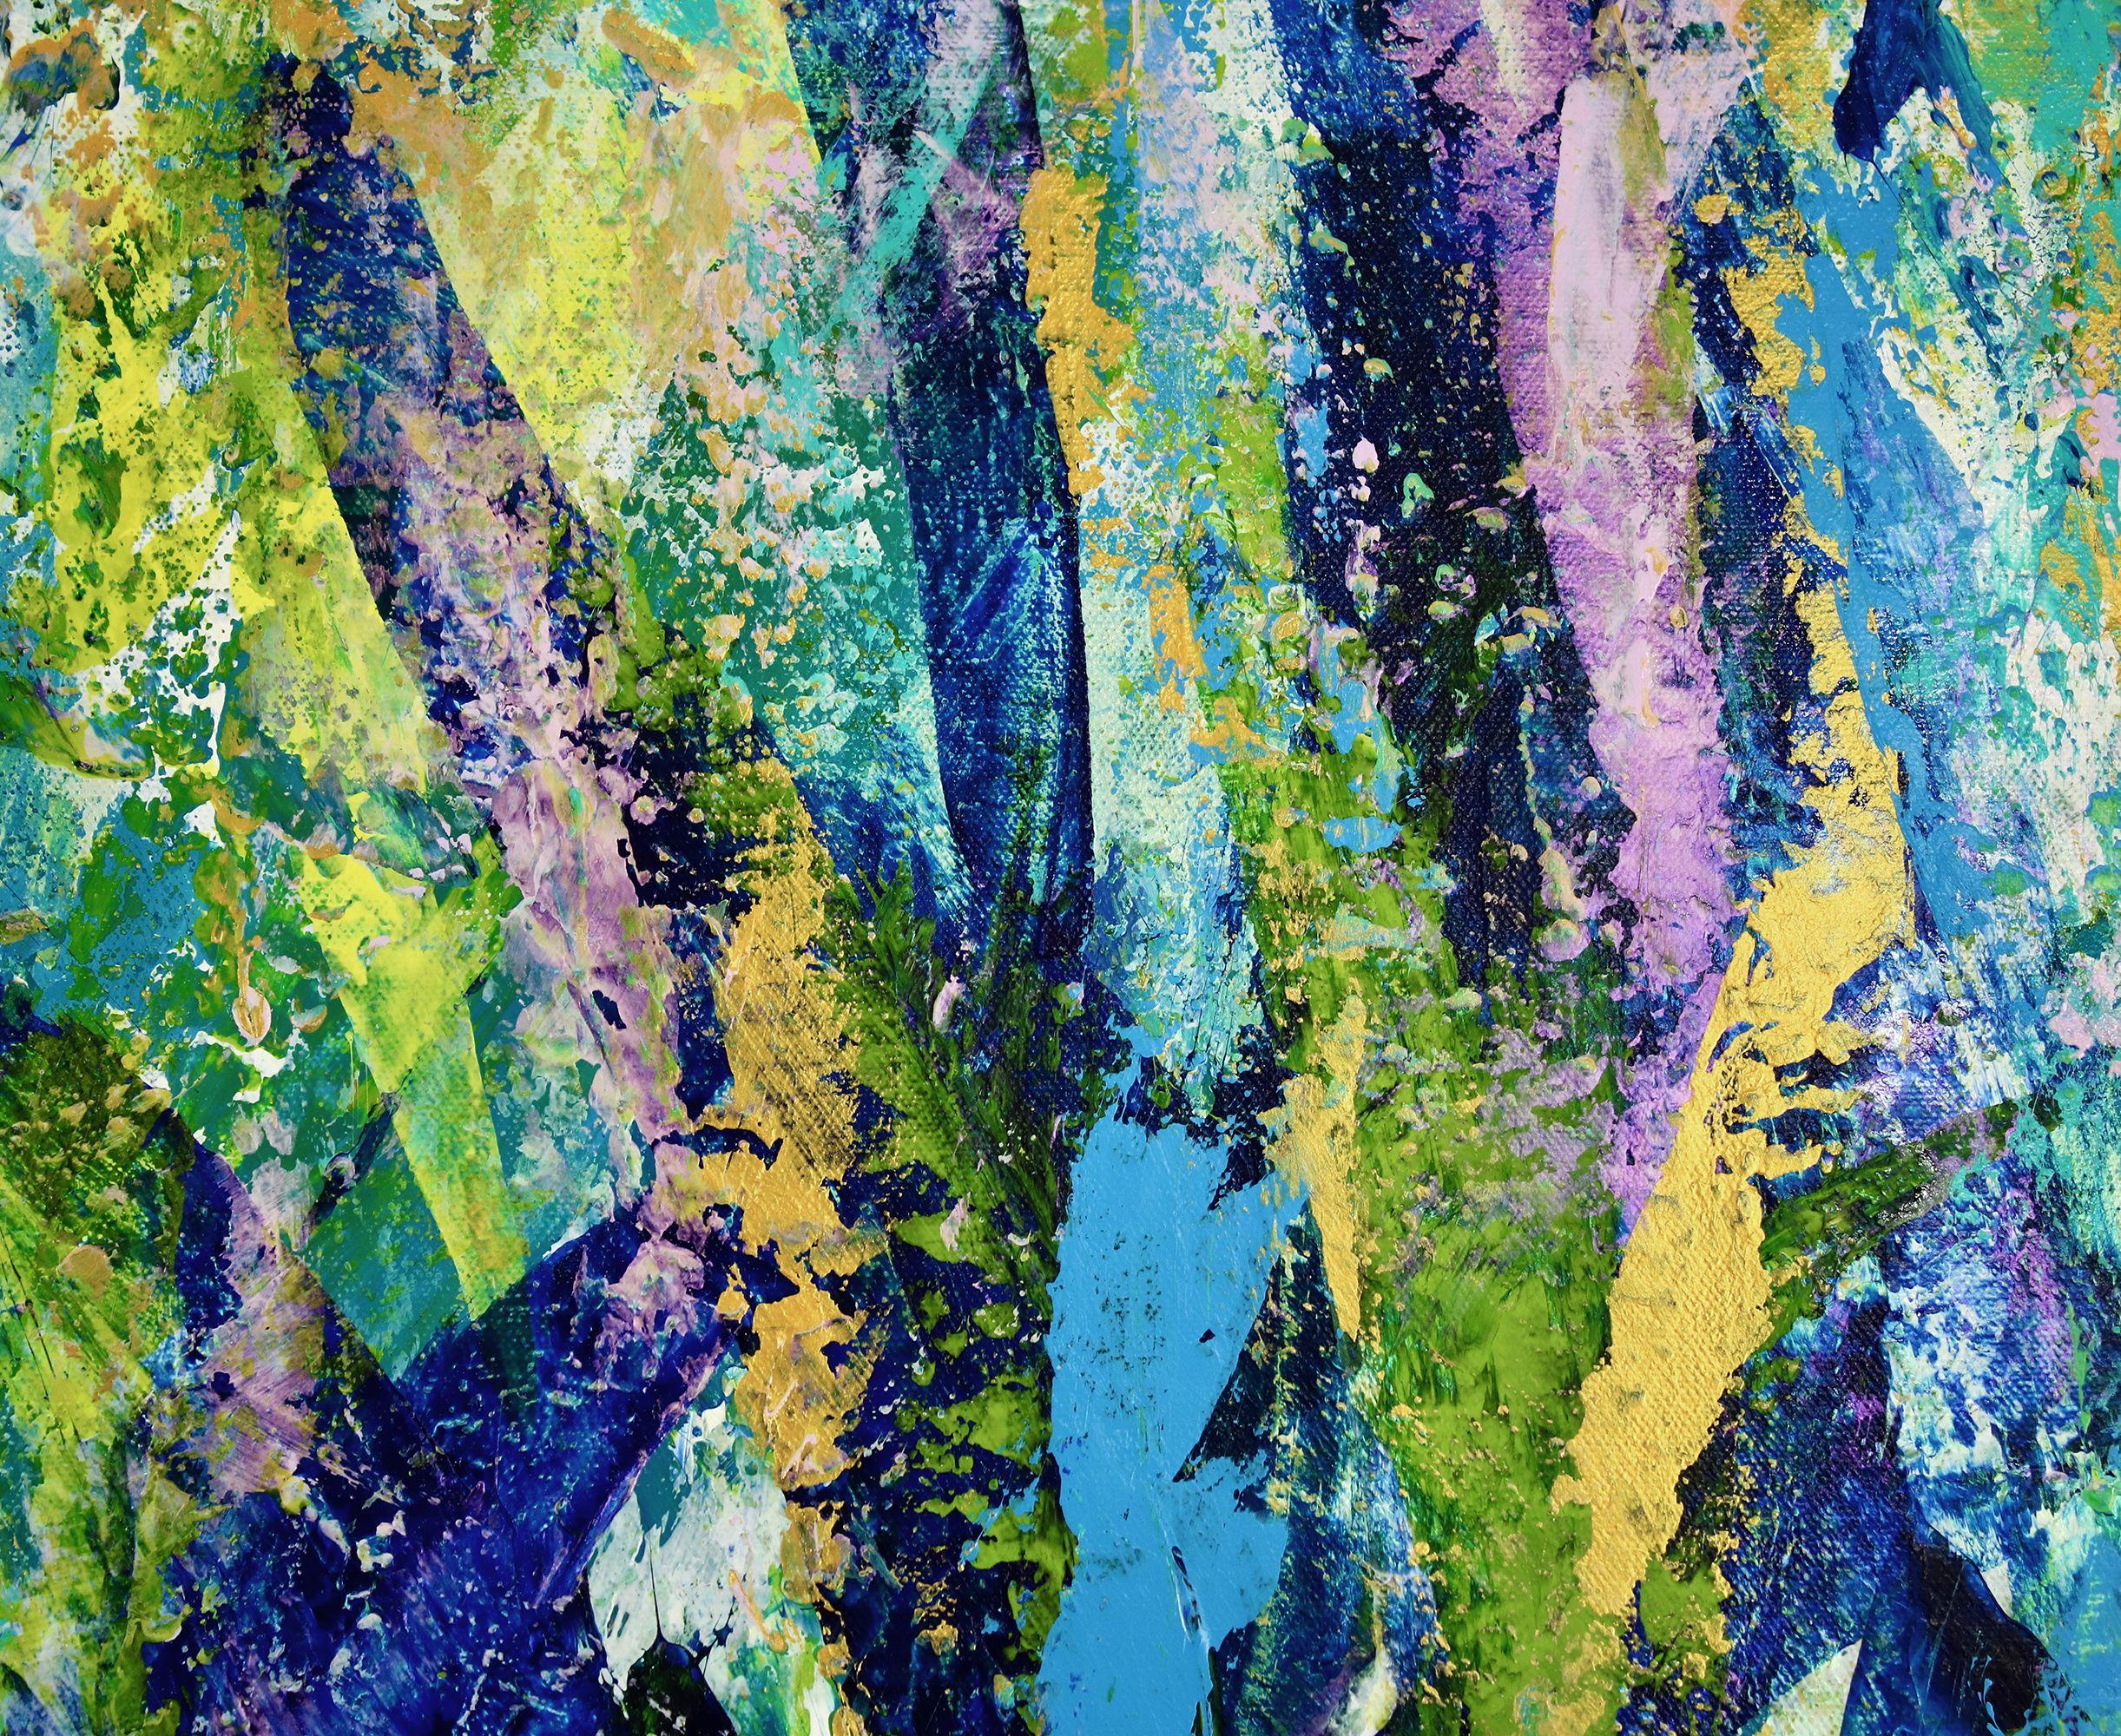 TIEFER RAND UND BEREIT ZUM AUFHÄNGEN!    Abstraktes, vom Wald inspiriertes Gemälde. Viel Struktur und üppiges Grün, kombiniert und vermischt mit Teal und vielen Blautönen mit dezentem Gold und schillernden lila Details. Dieses überdimensionale